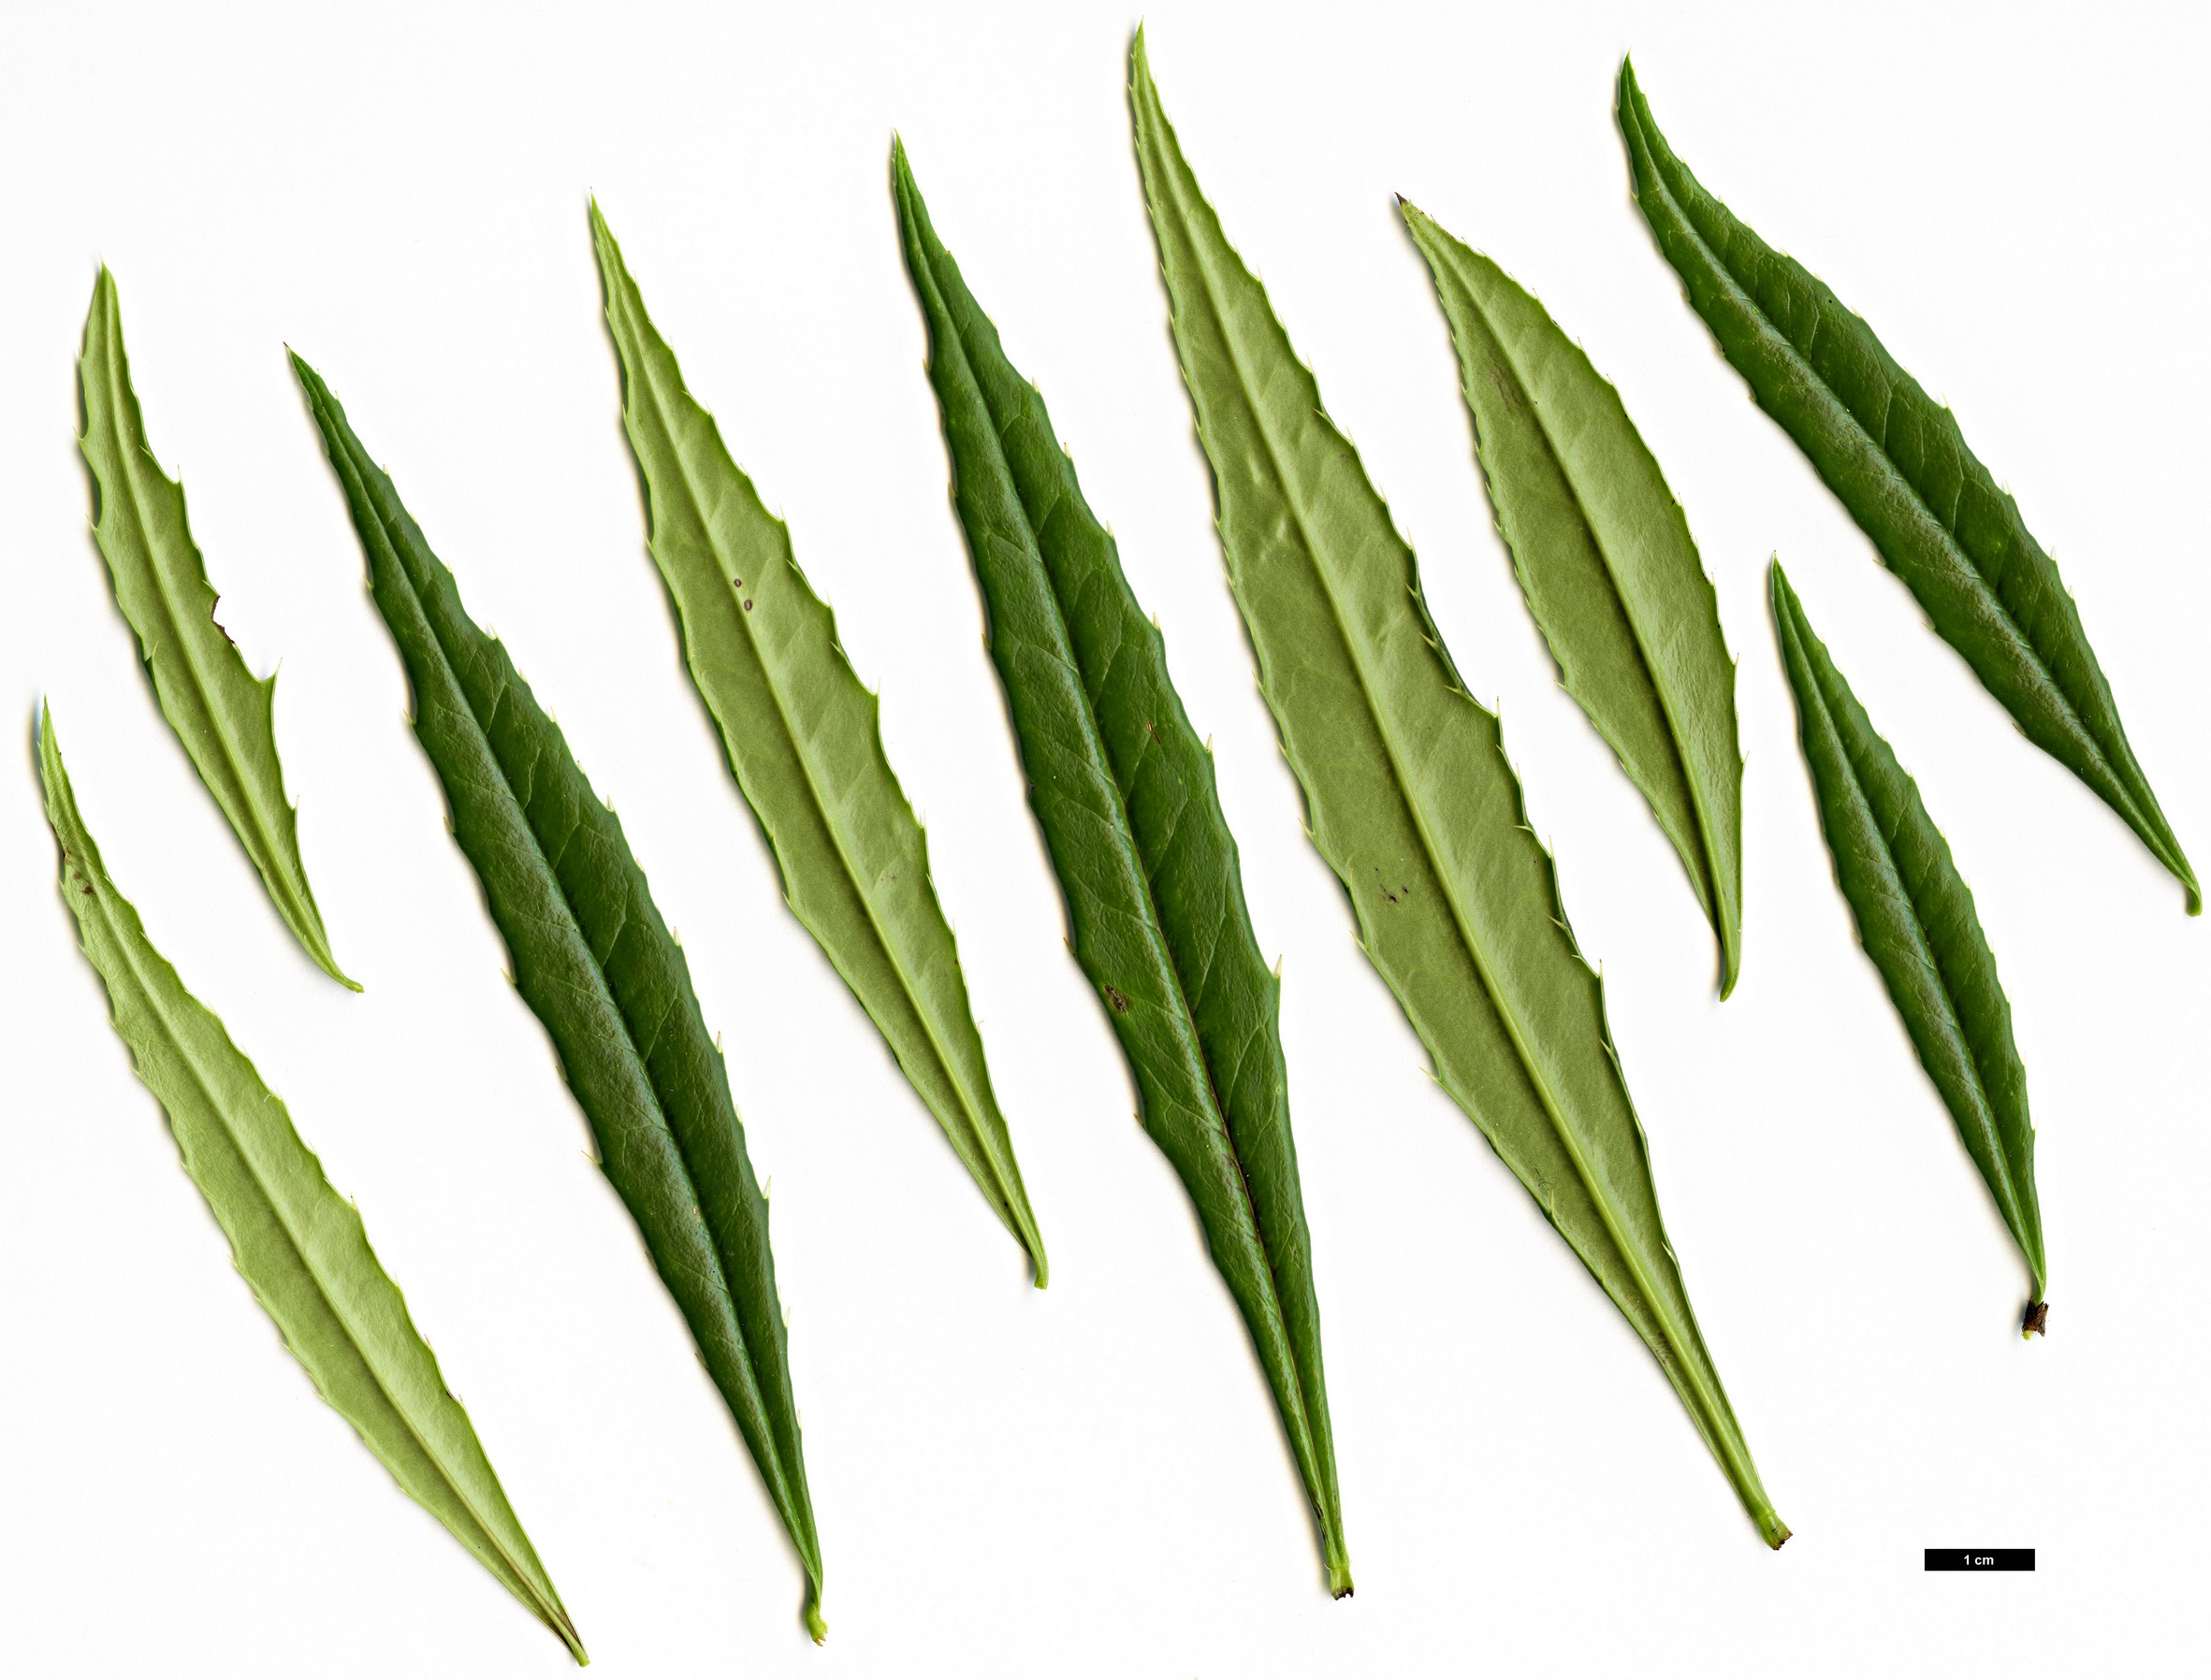 High resolution image: Family: Berberidaceae - Genus: Berberis - Taxon: yingjingensis